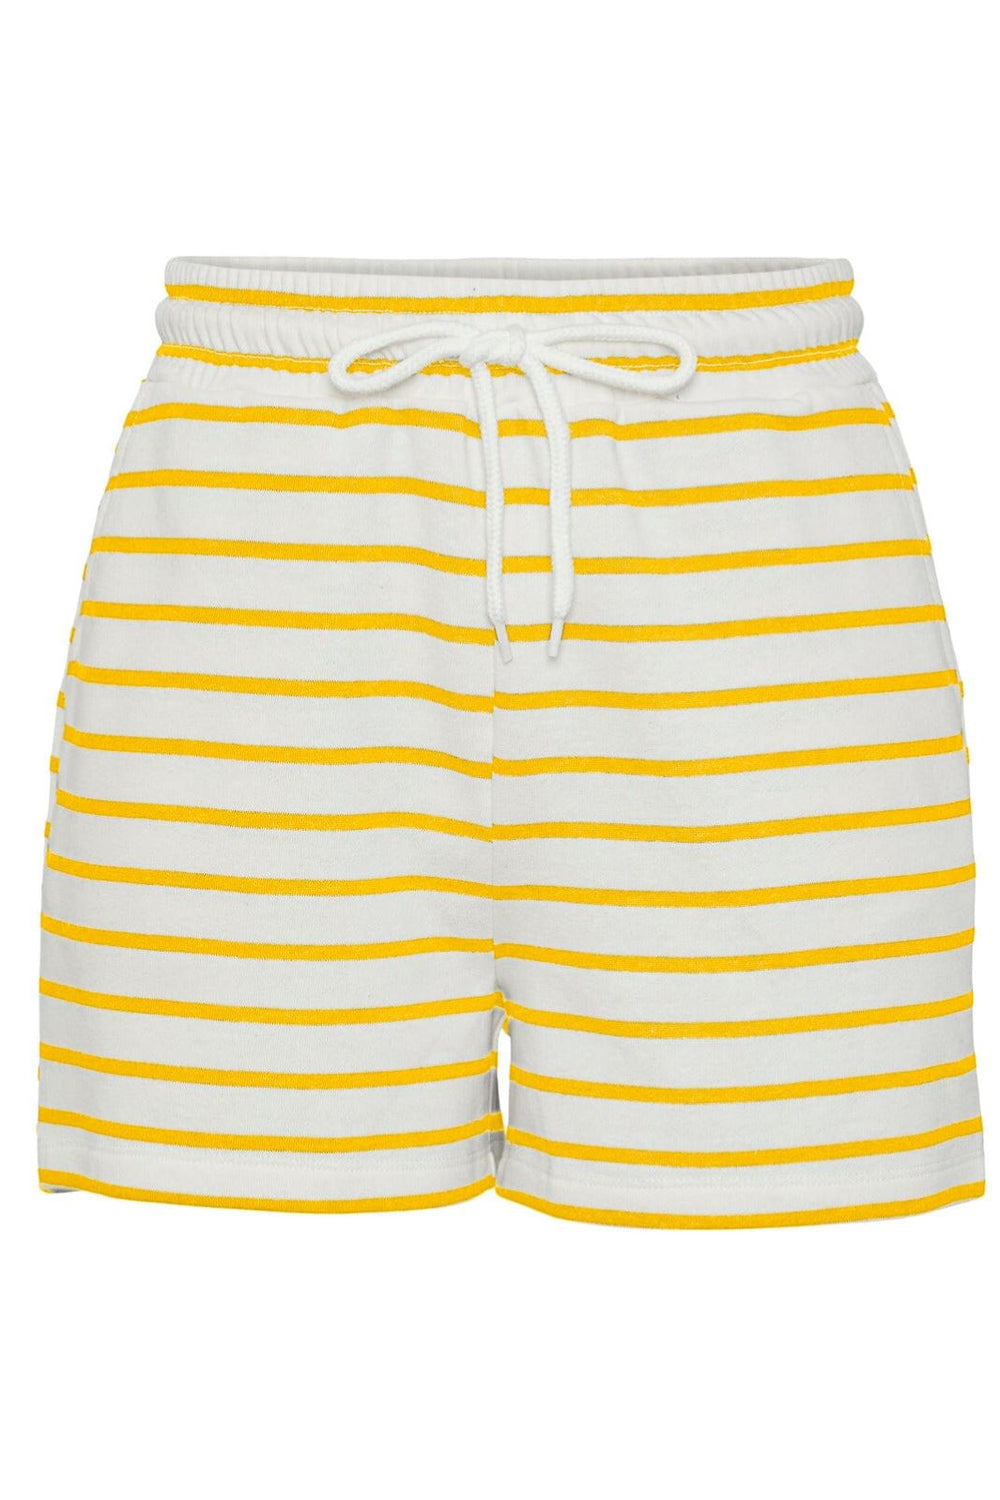 Pieces - Pcchilli Summer Shorts Stripe - 4484778 Cloud Dancer Lemon Shorts 